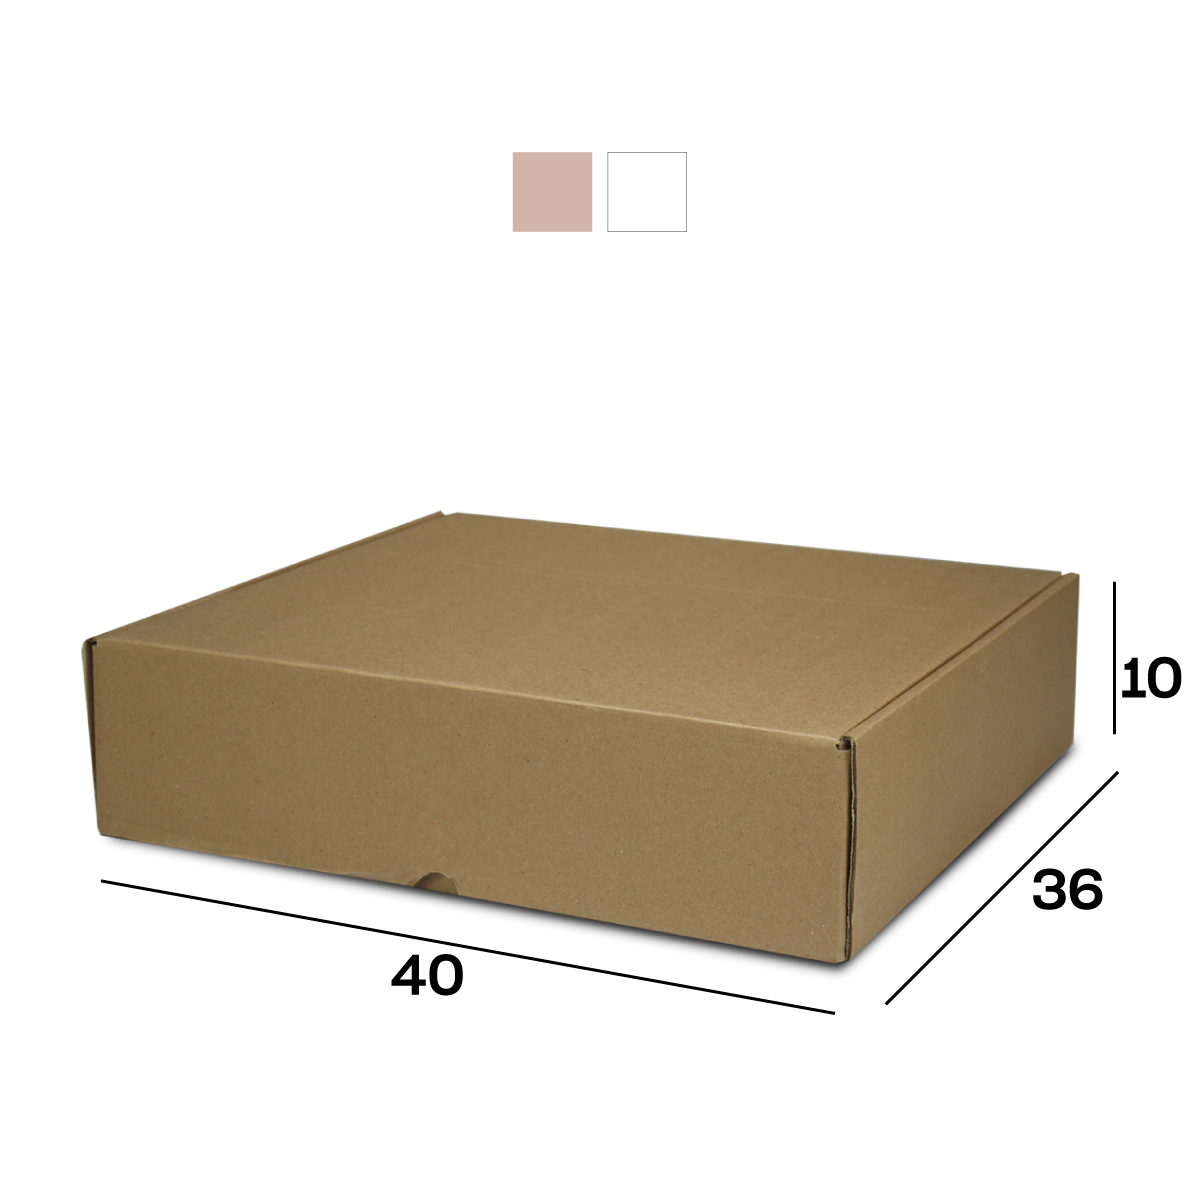 Caixa de Papelão Sedex 16 (40x36x10) Lisa